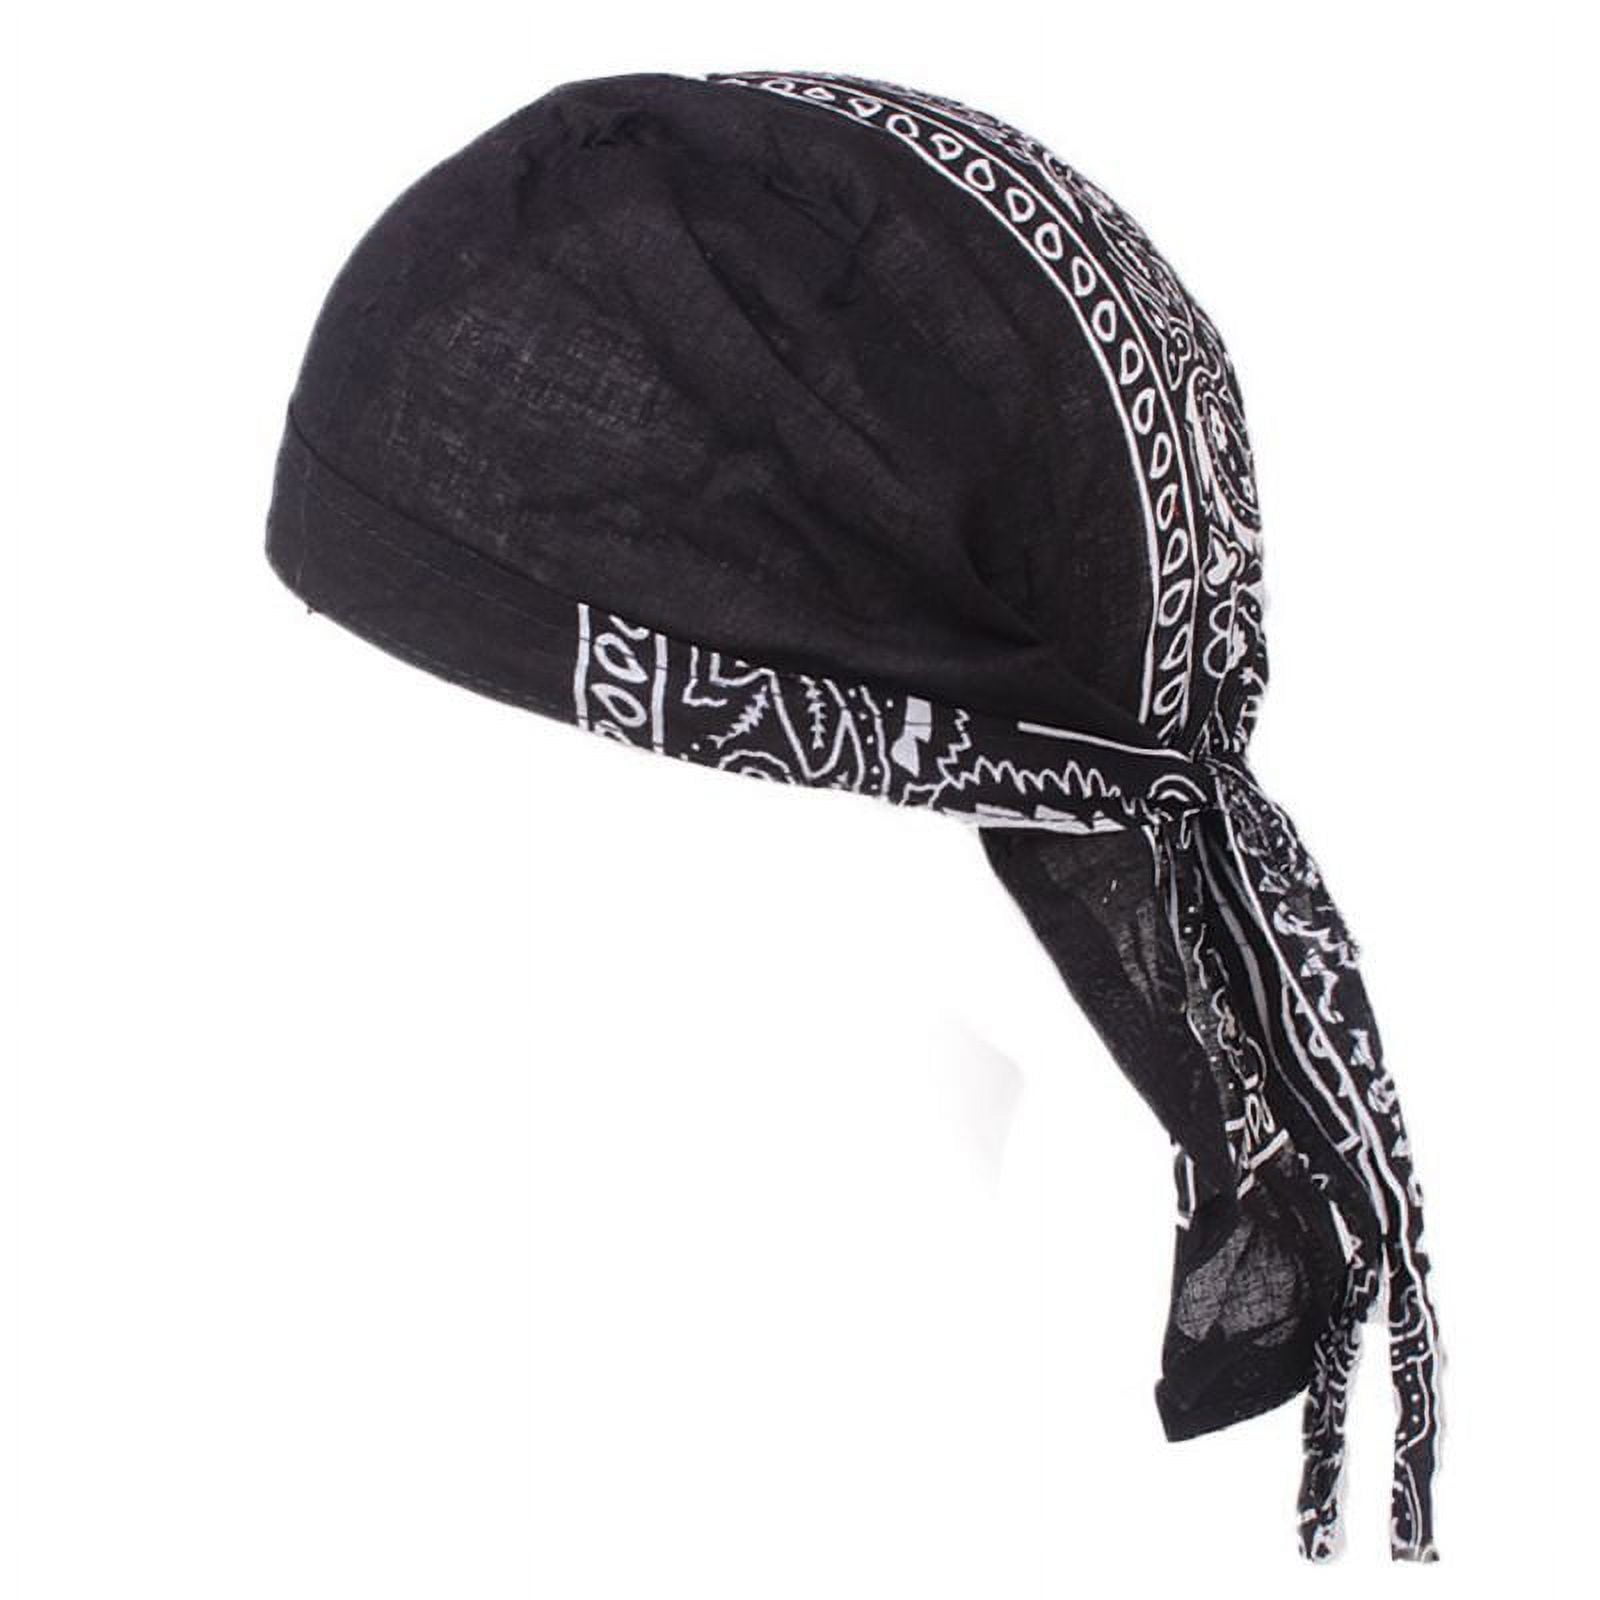 Cotton Durag Du-rag Wave Cap Hat Doo Rag Biker Bandana Head Wrap Skull Cap